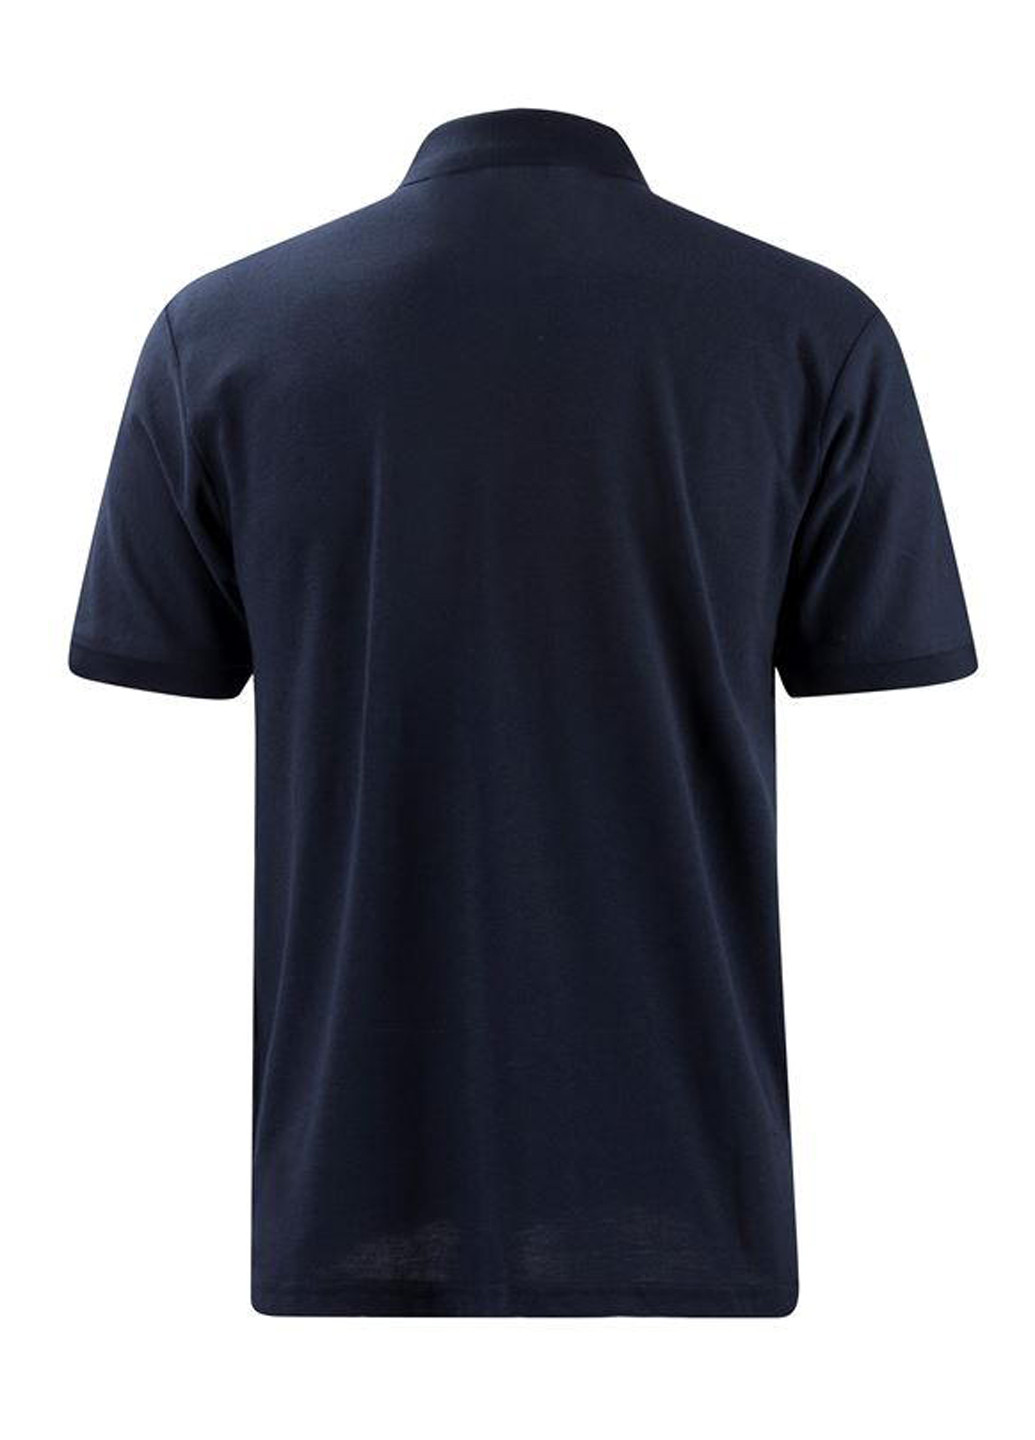 Темно-синяя футболка-поло для мужчин Lee Cooper с логотипом